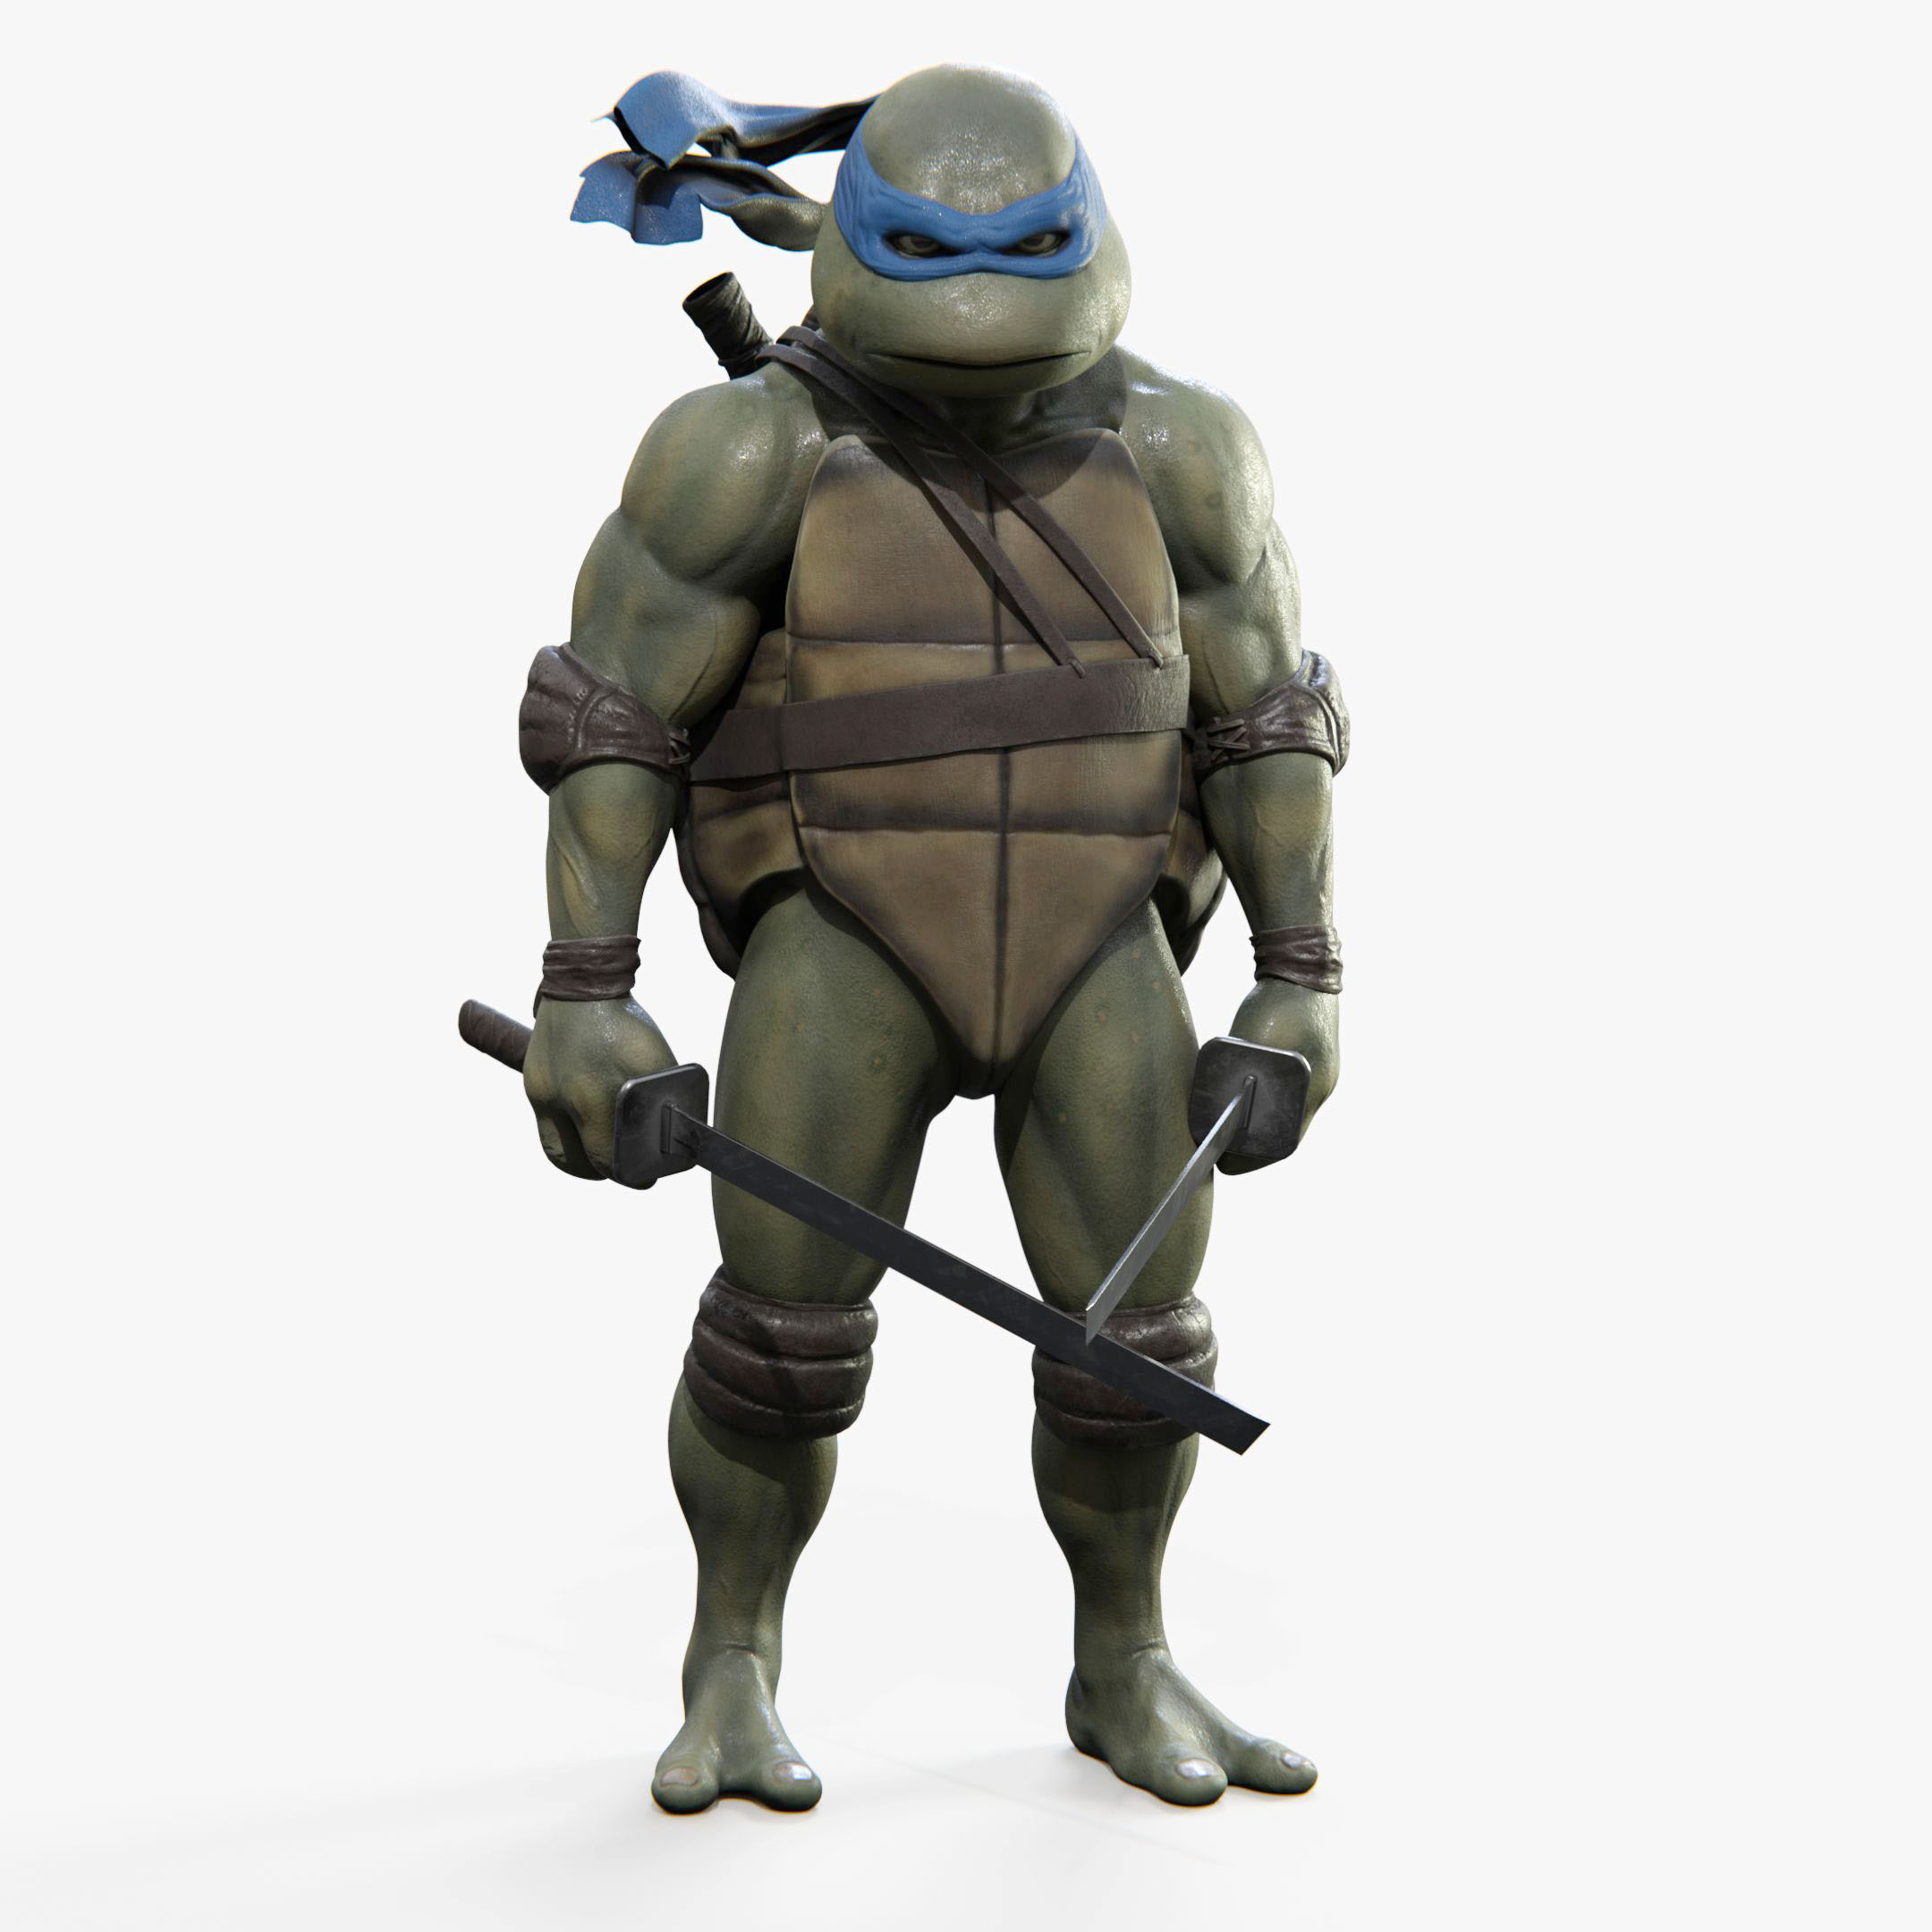 Leonardo Teenage Mutant Ninja Turtle Image